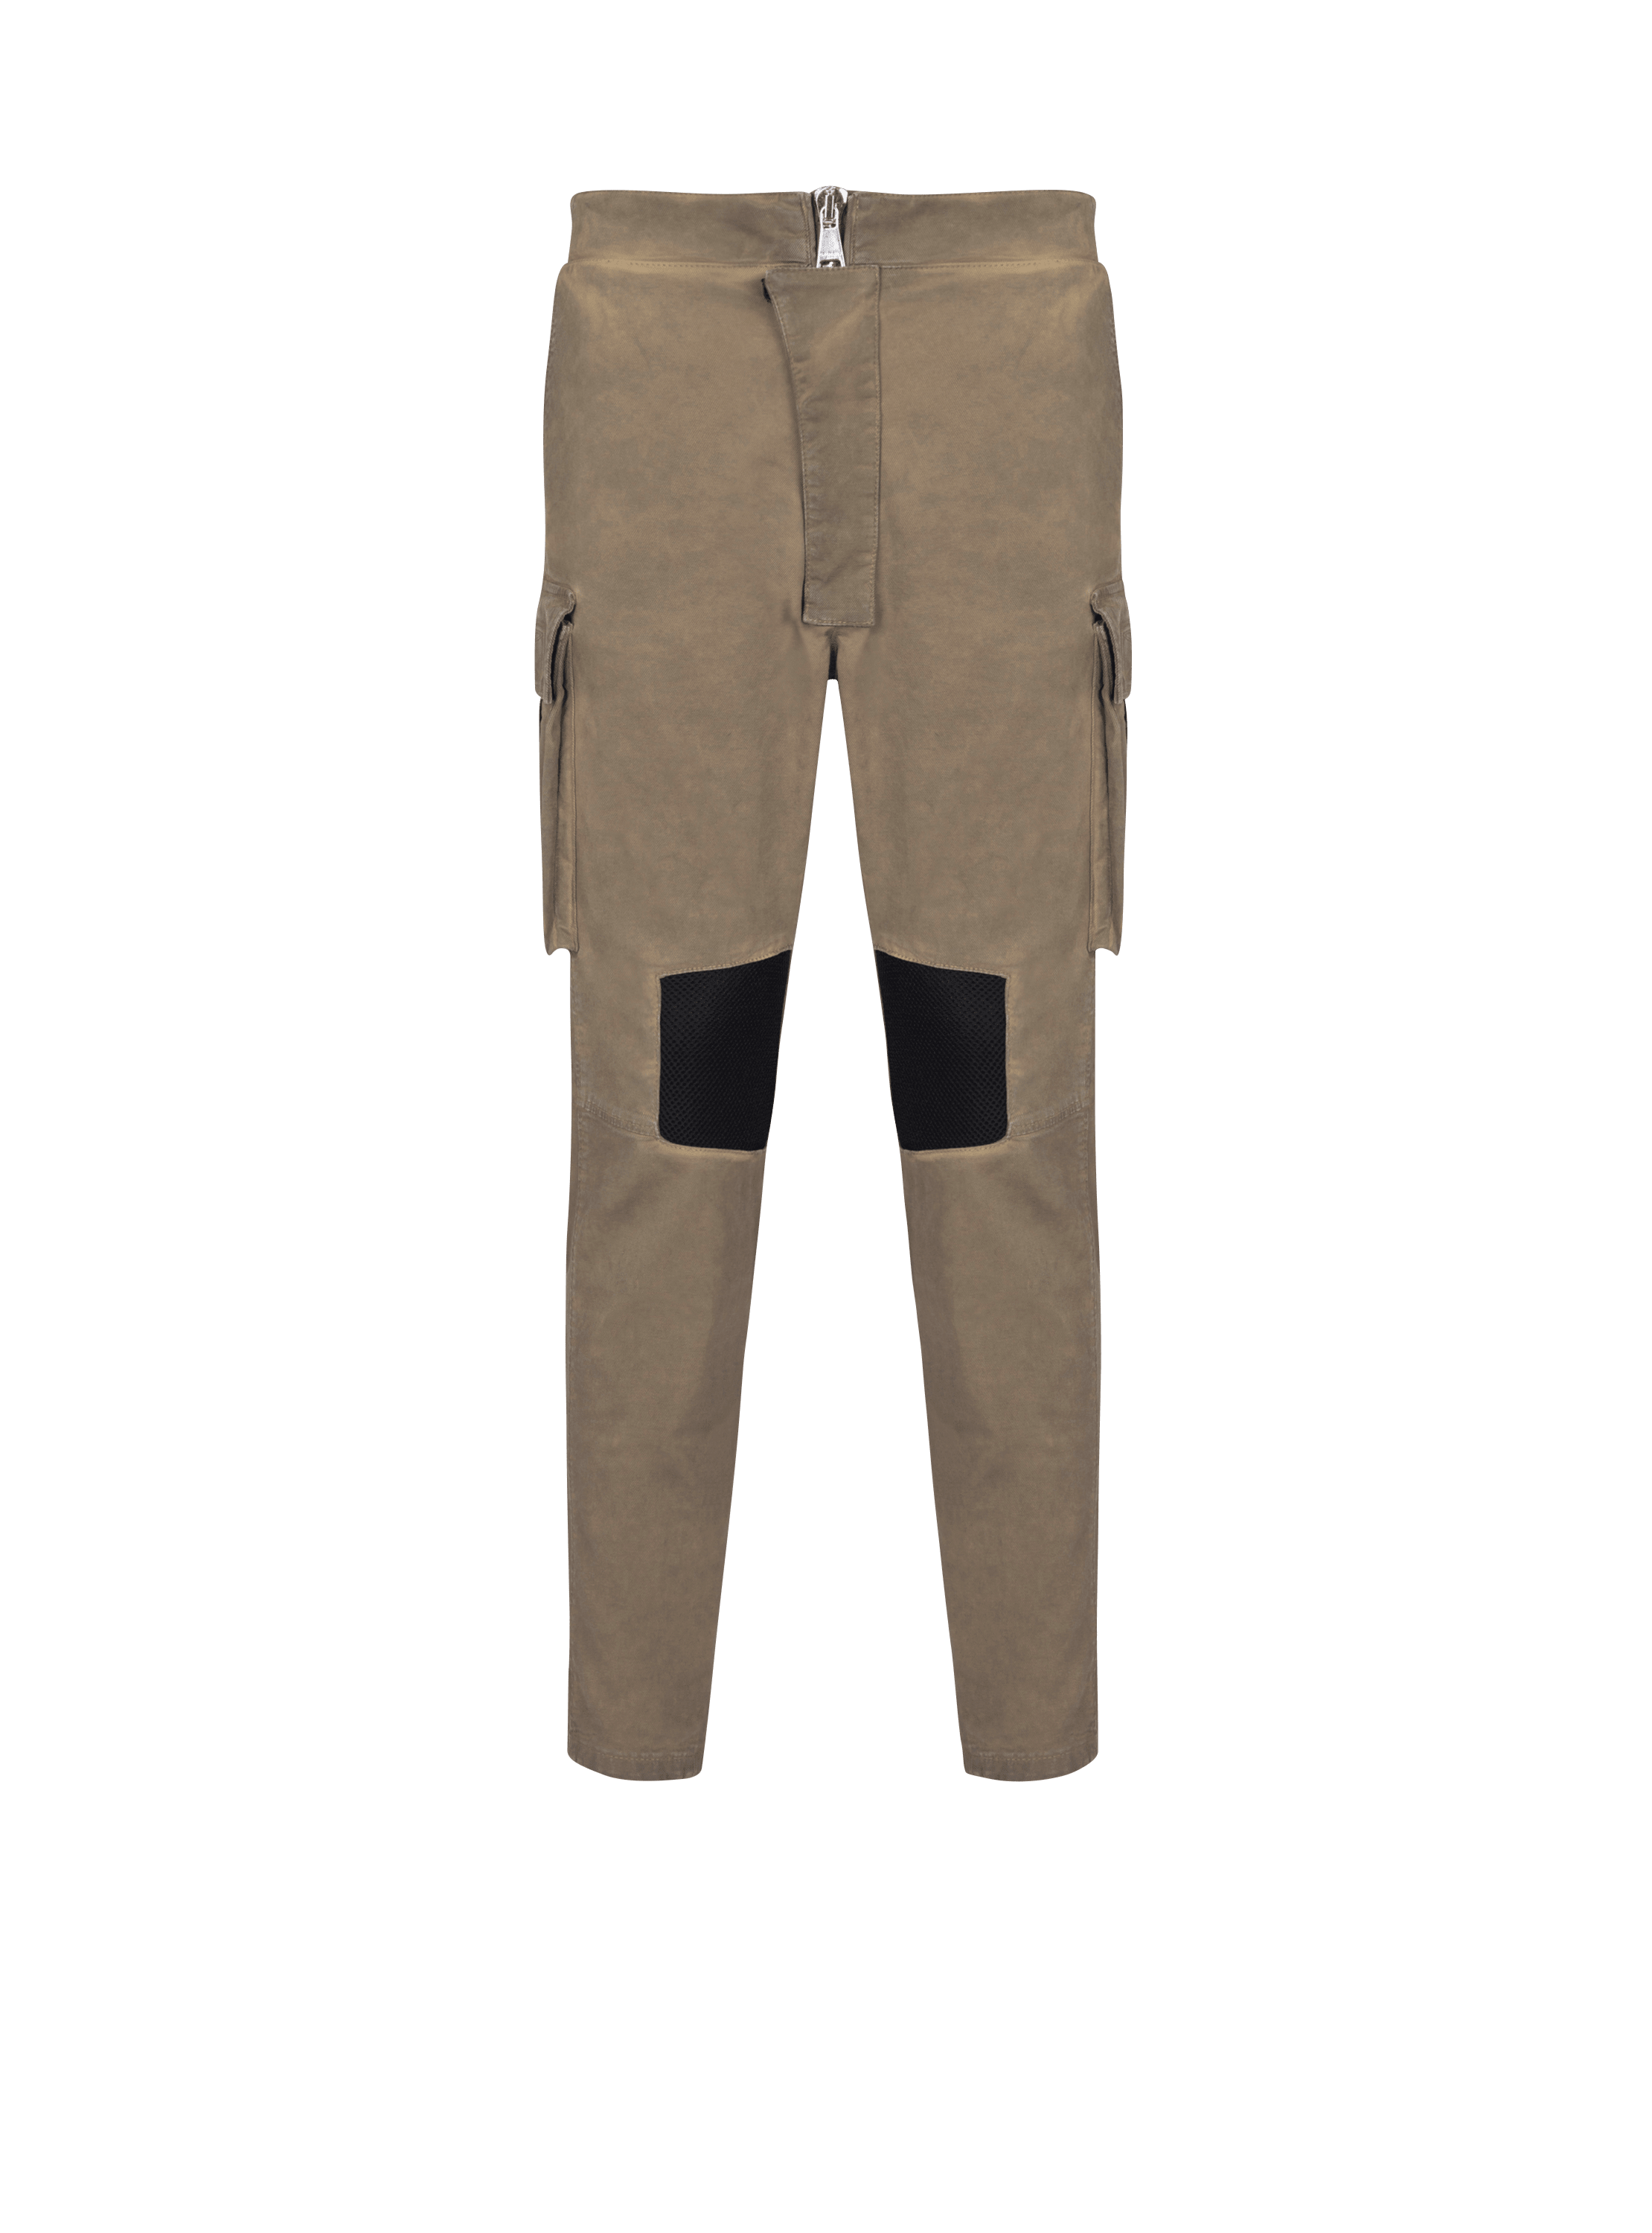 Pantalones tipo cargo de algodón con inserciones